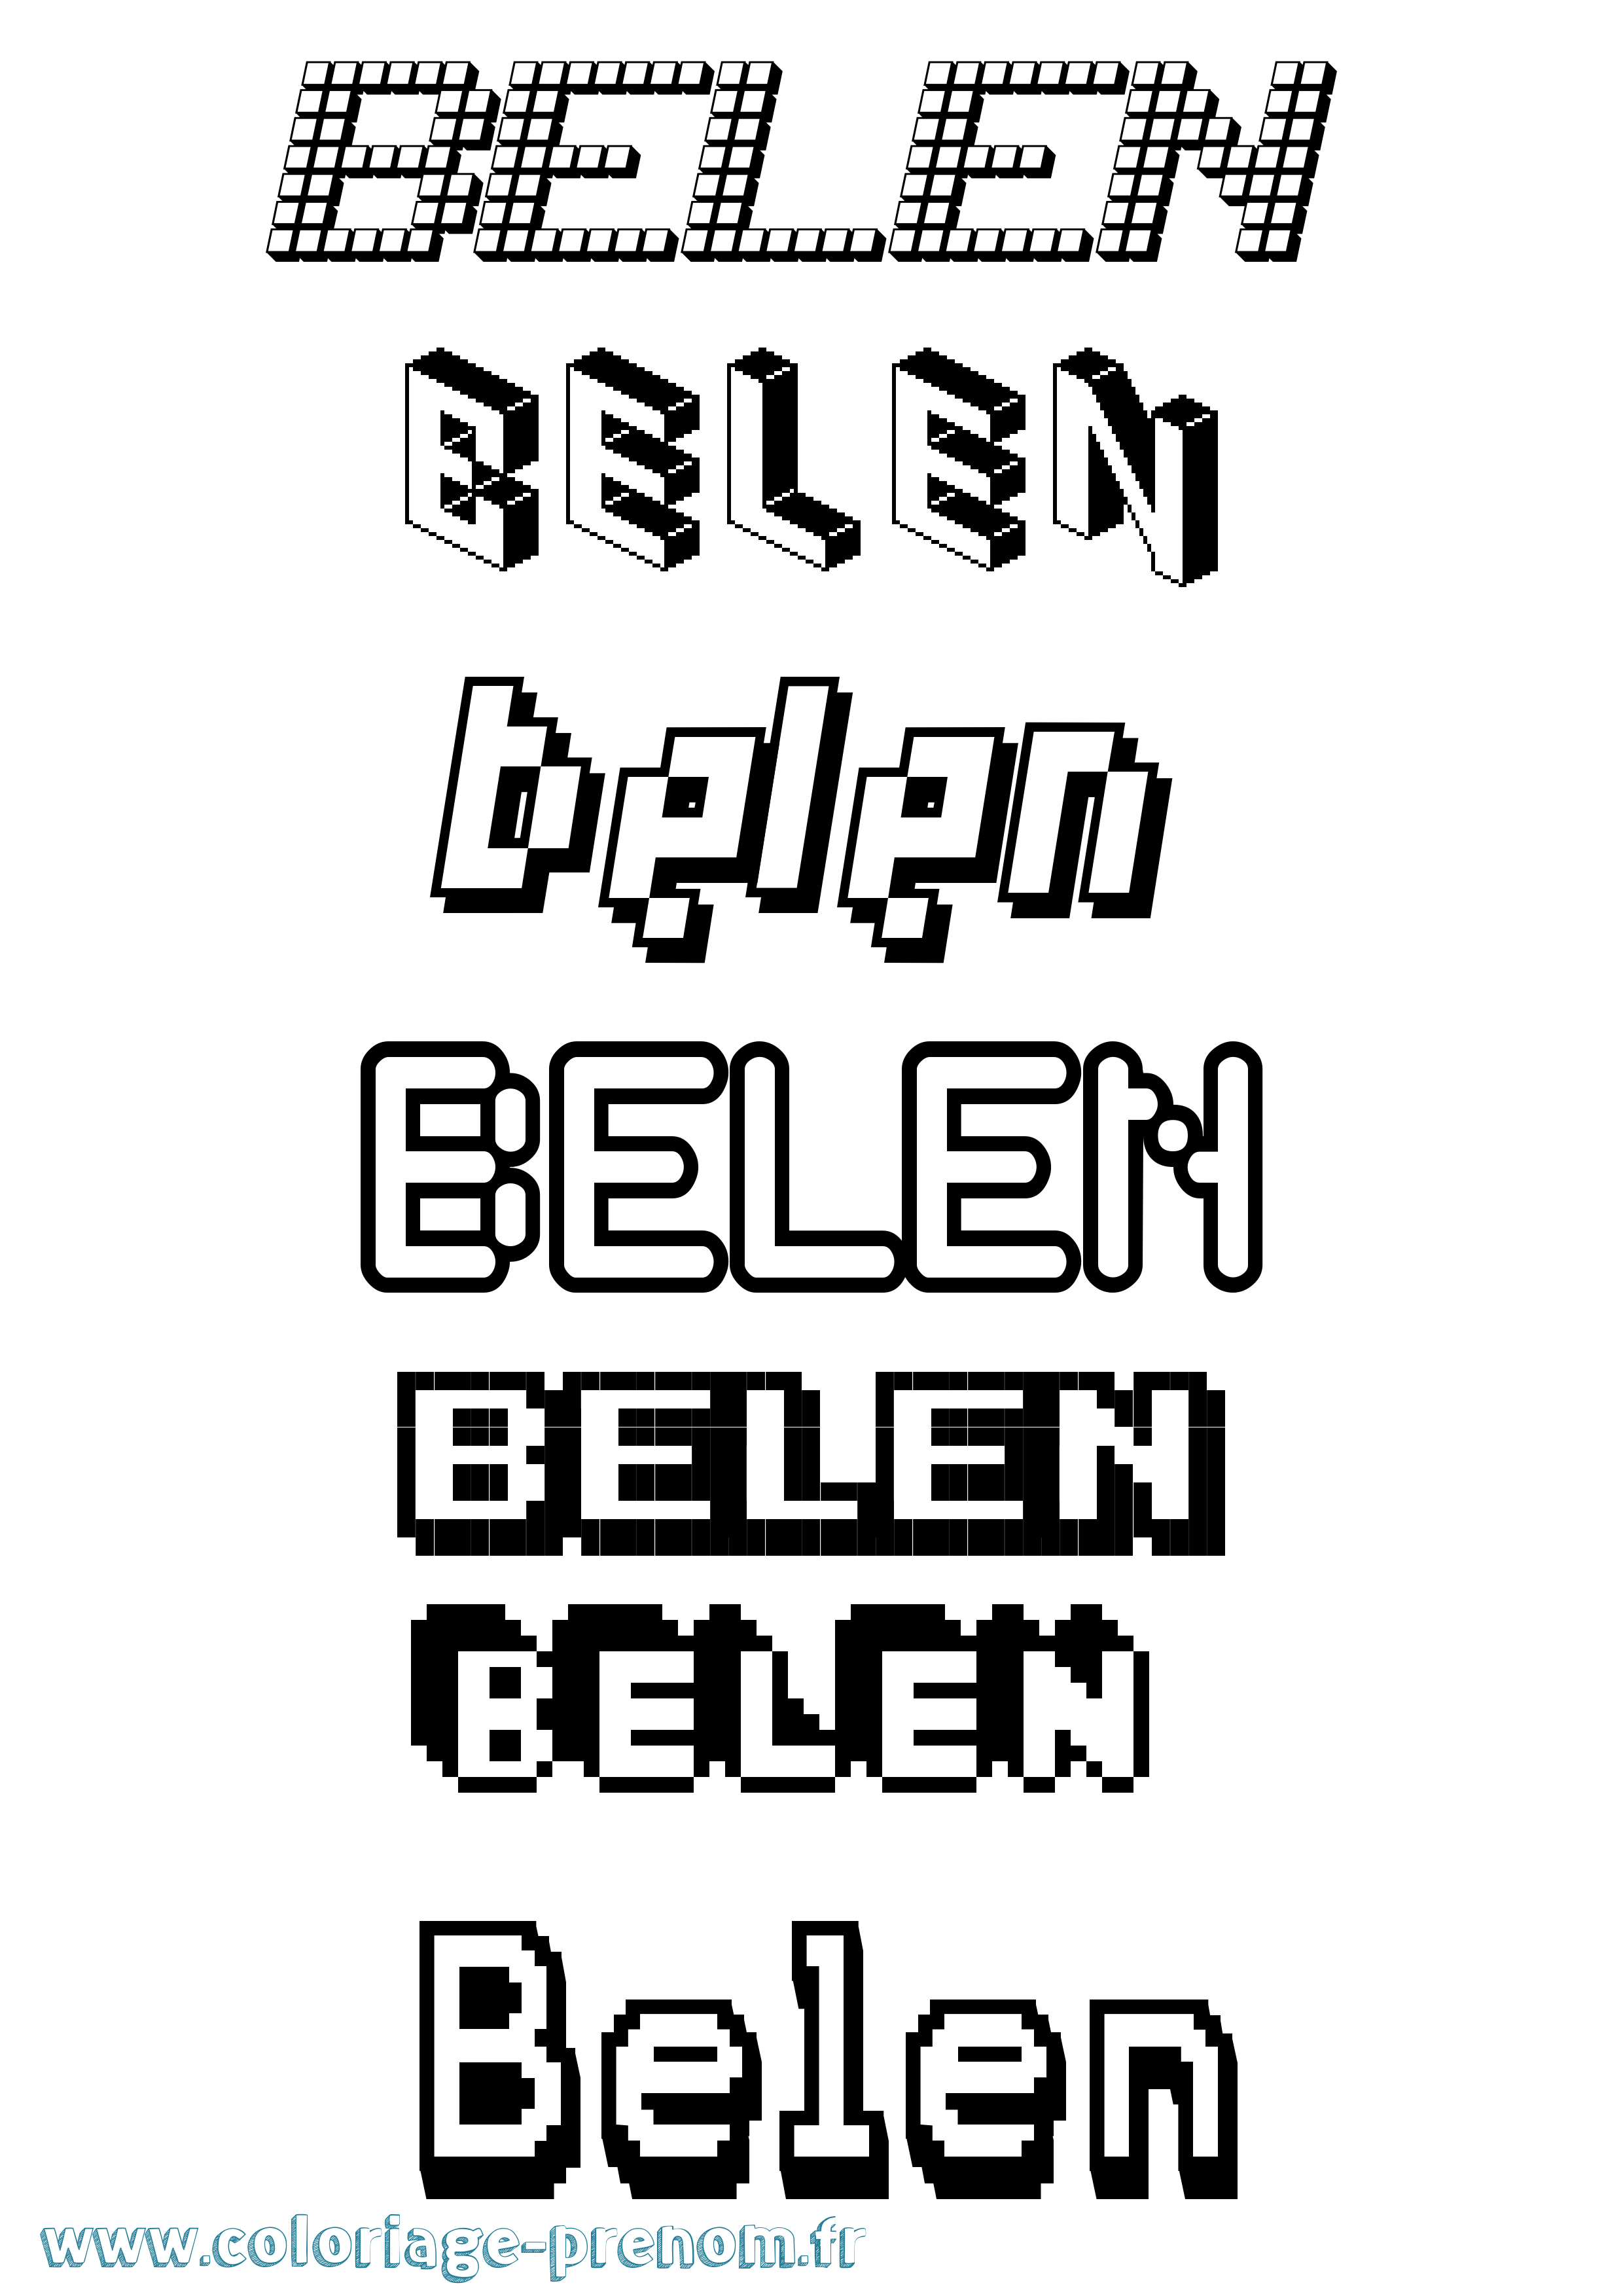 Coloriage prénom Belen Pixel